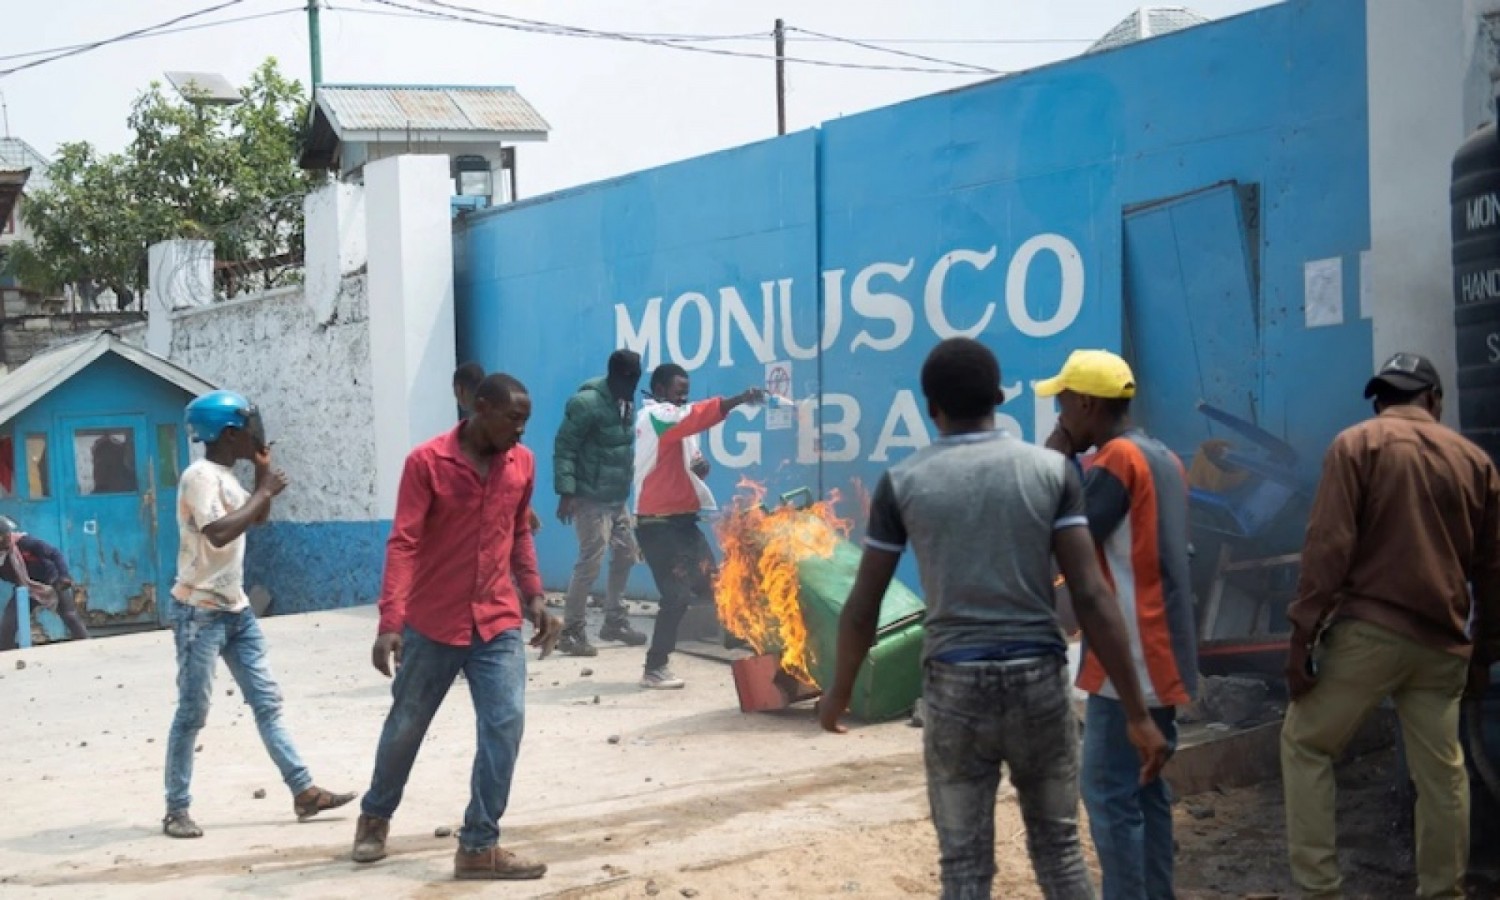 RDC : Un convoi de la Monusco attaqué par une foule dans l'est, deux casques bleus blessés